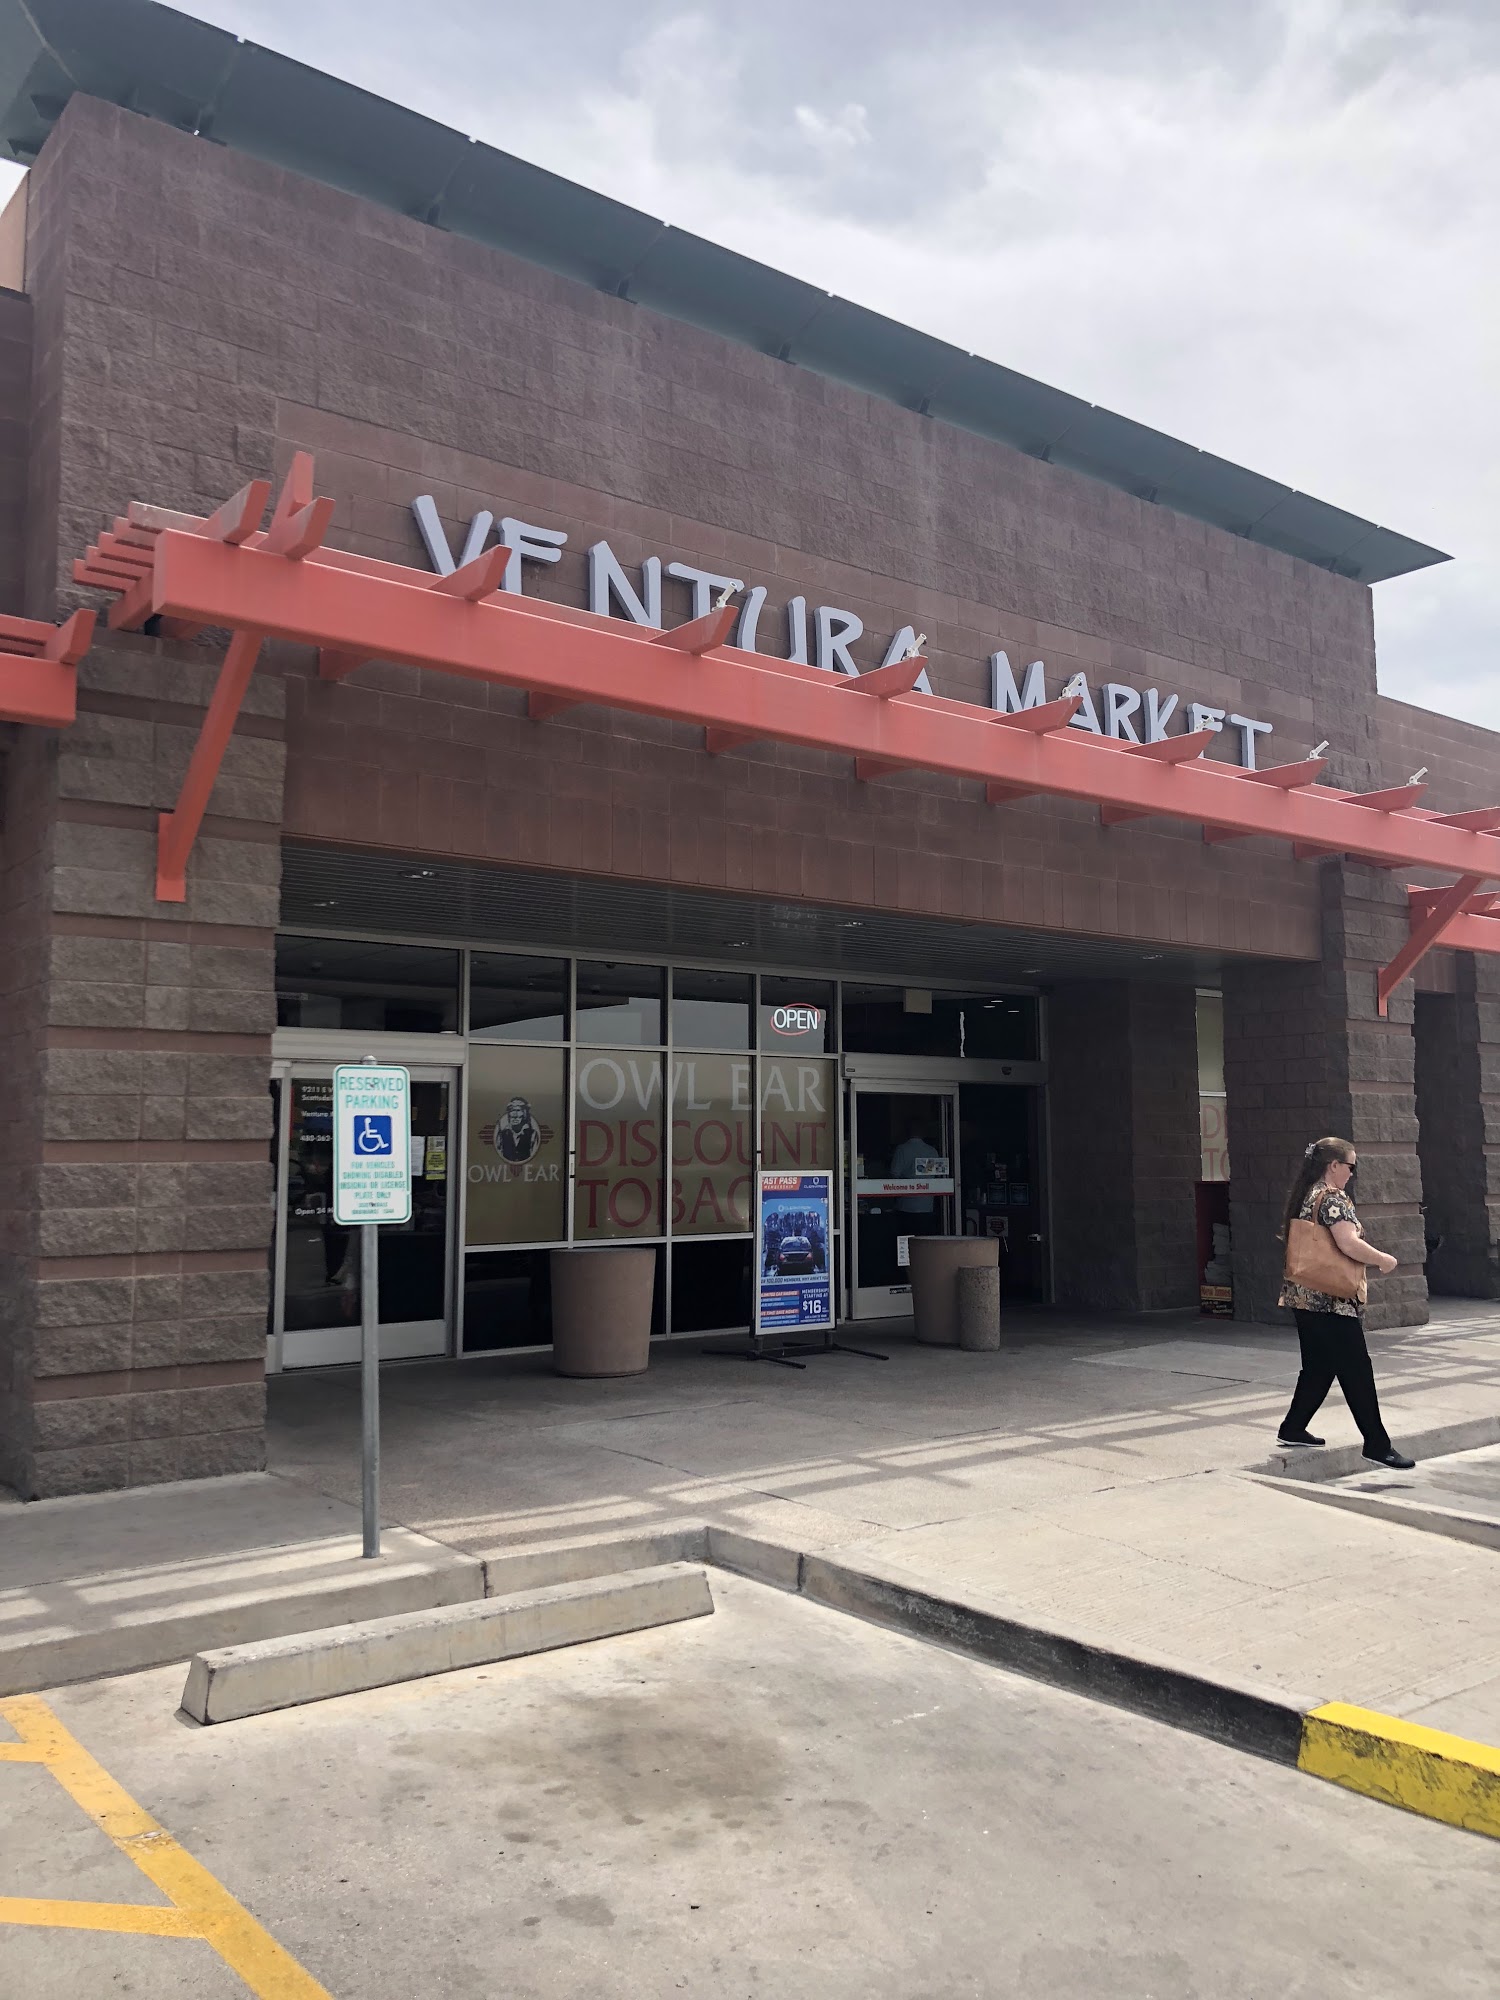 Ventura Market